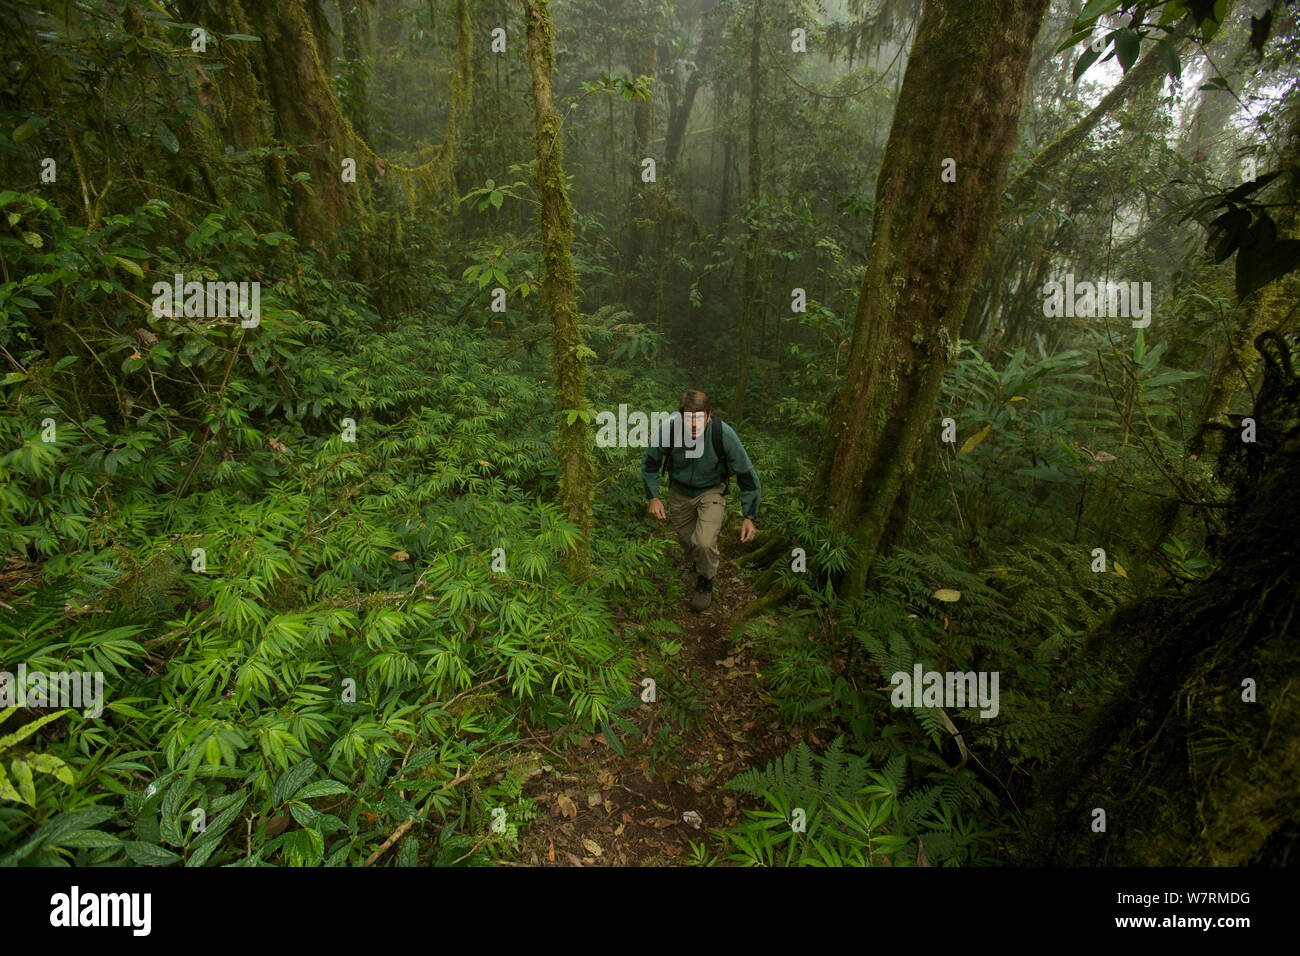 La foresta pluviale montane a 2000 m di altitudine con il fotografo Tim Laman escursionismo. Monti Arfak, Nuova Guinea, Agosto 2009. Foto Stock